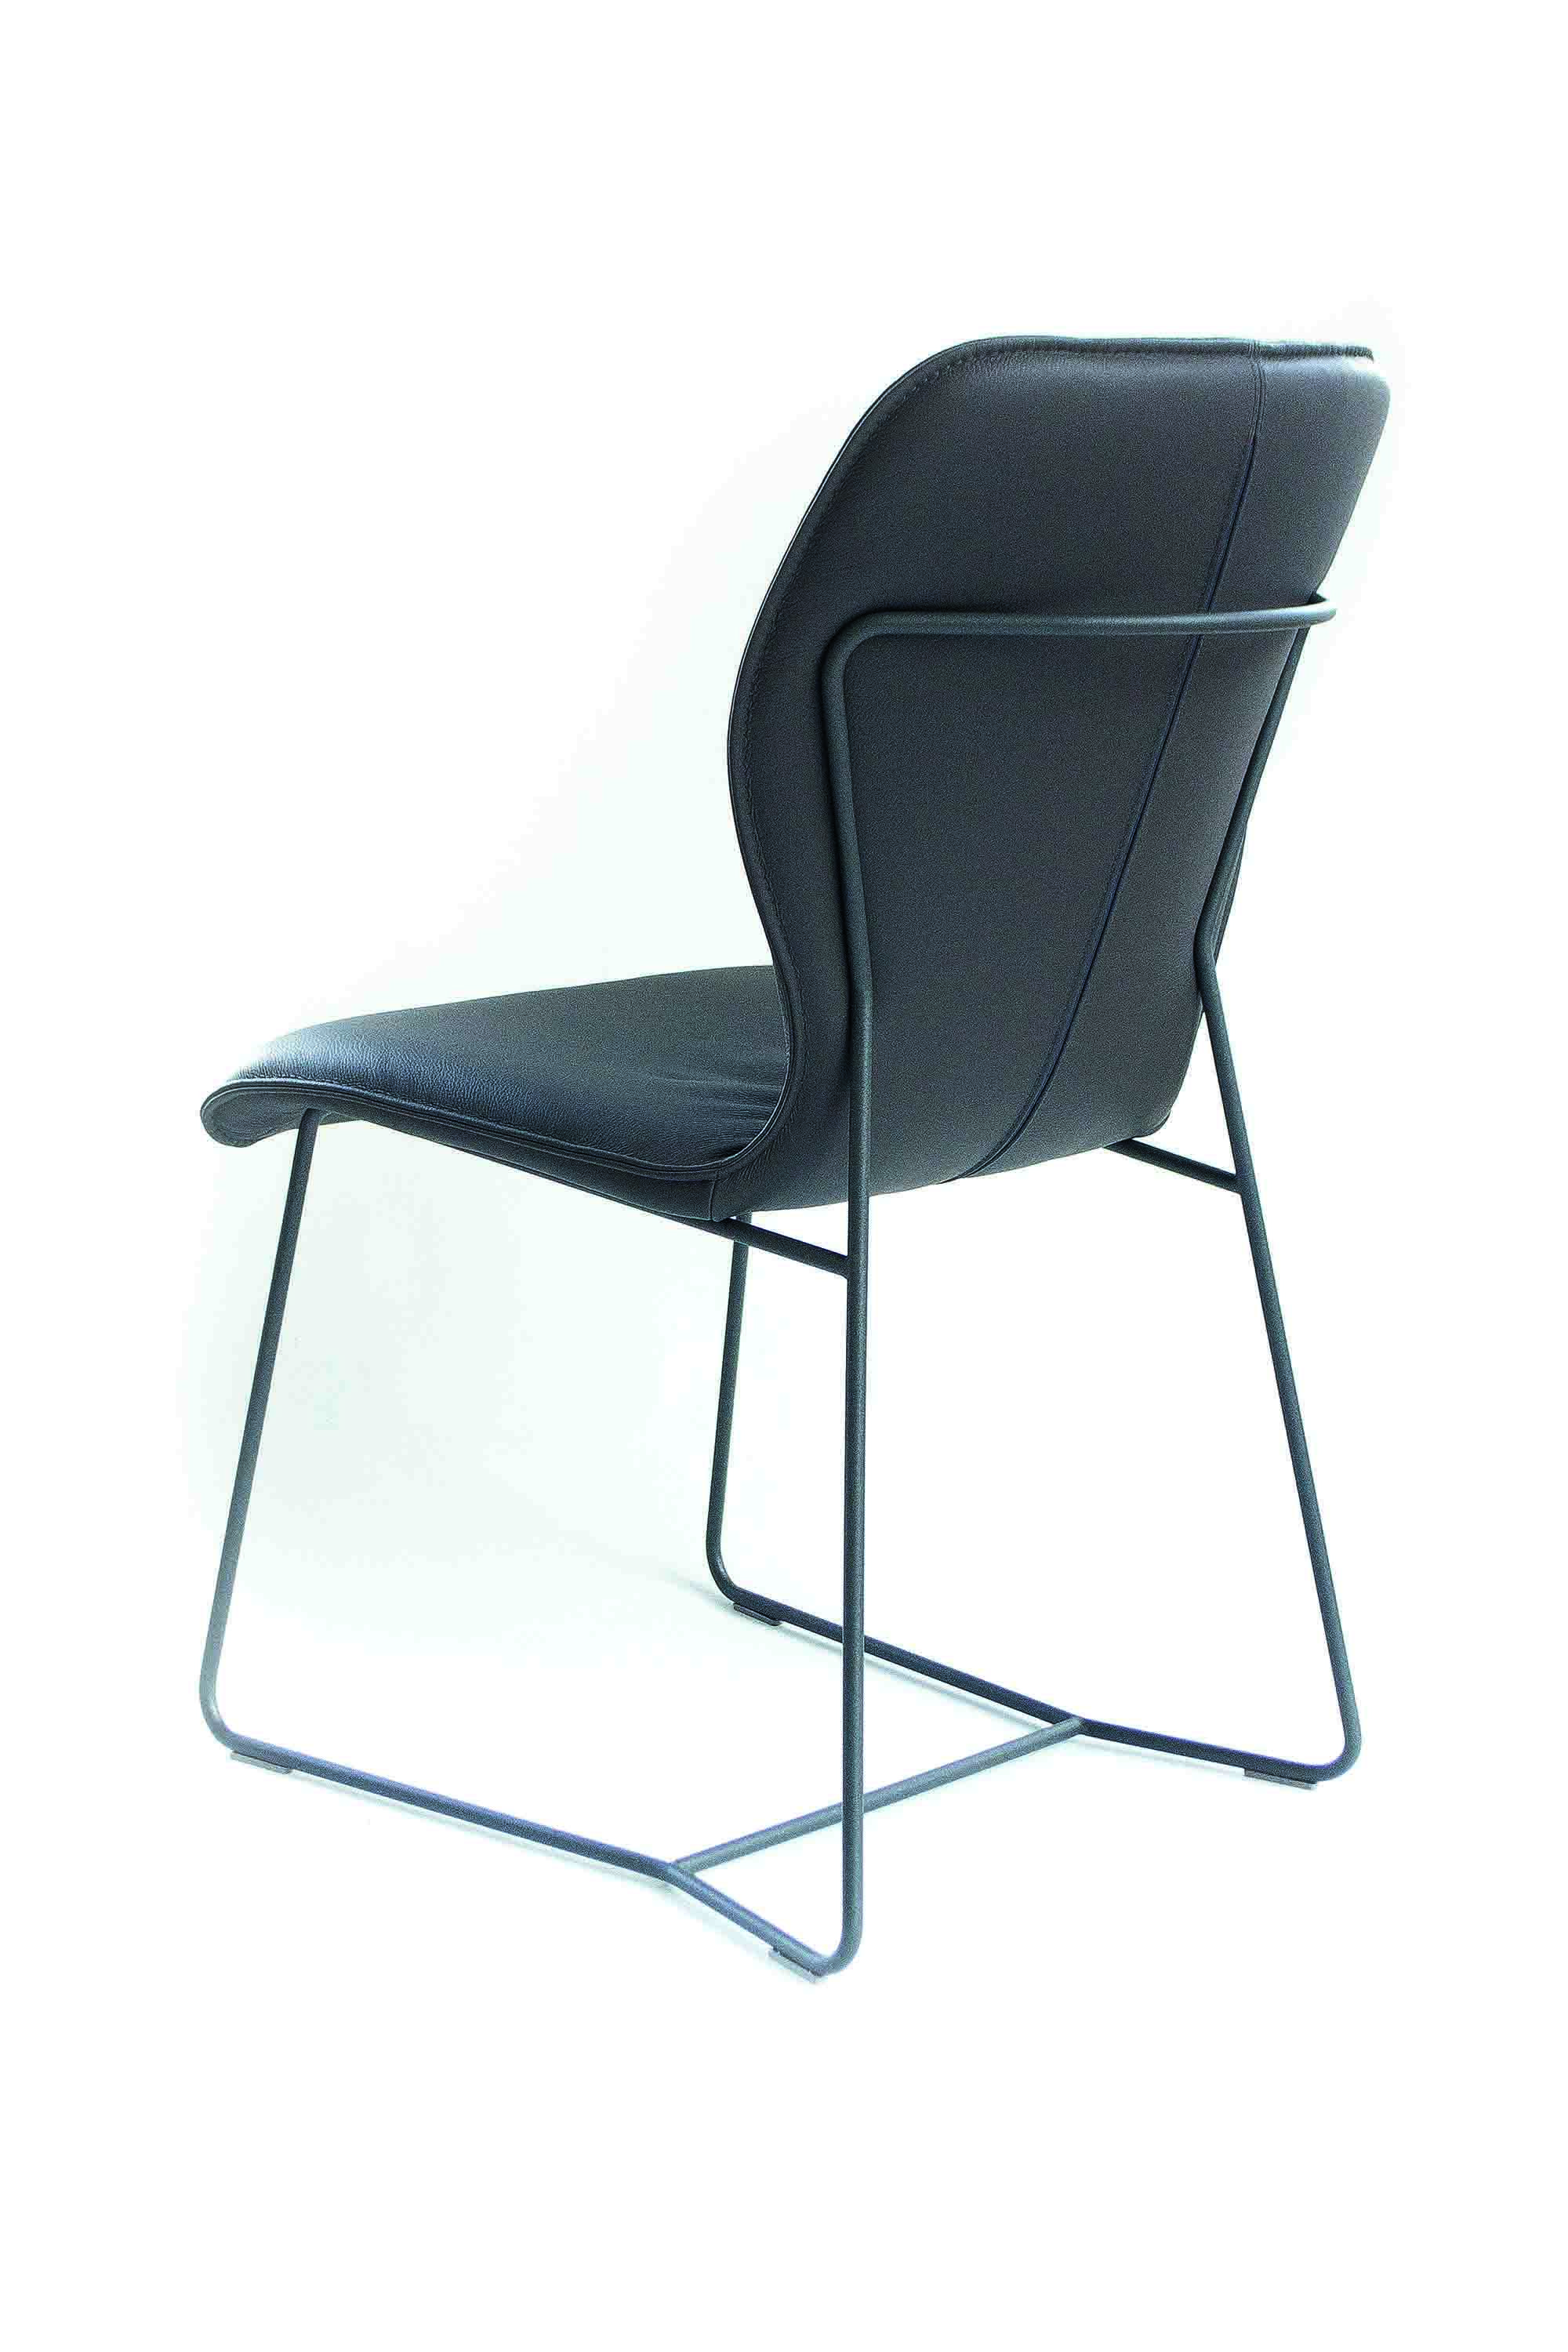 Esstisch Stuhl mit schwarzem Untergestell in Leder - Esstischstuhl Melle